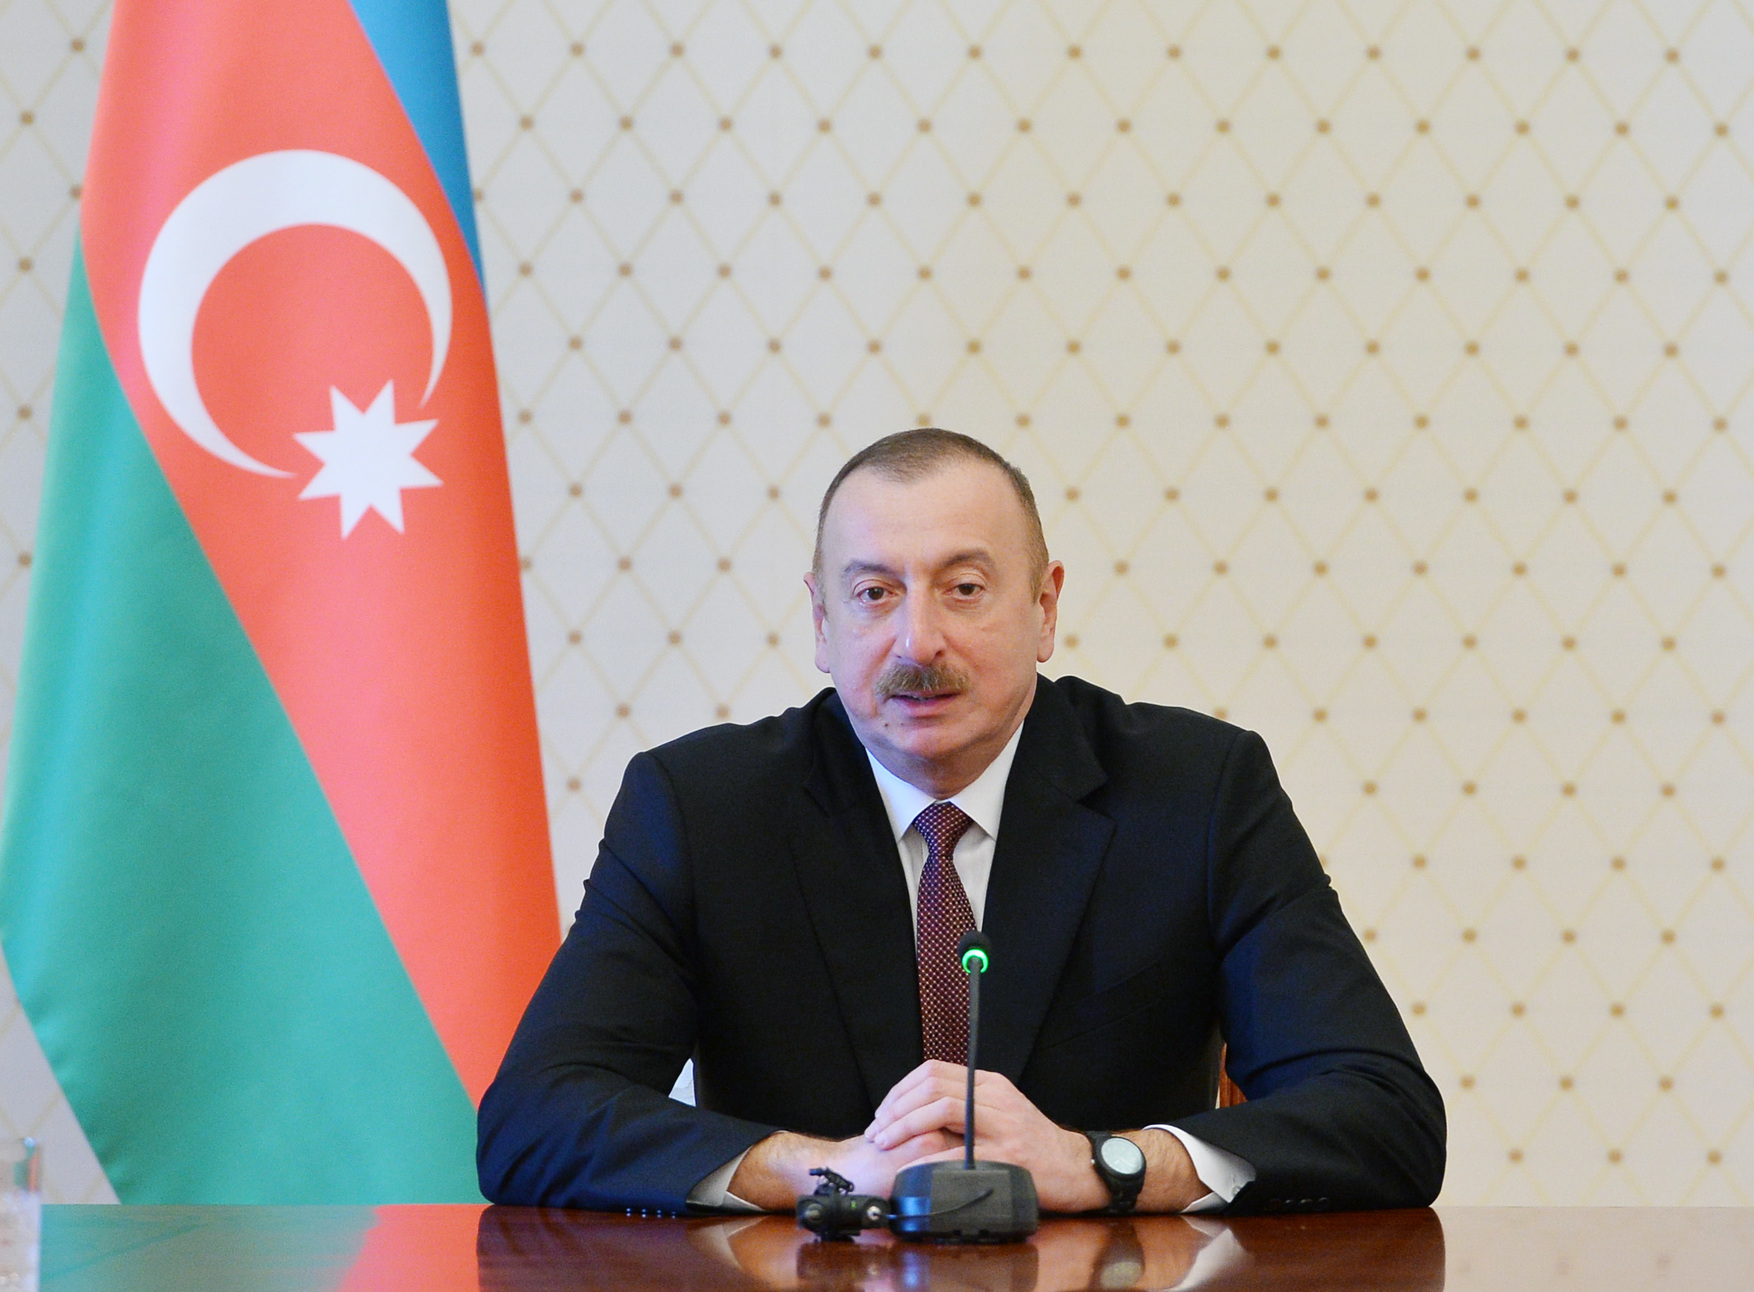 Azərbaycan Prezidenti: “Biz Avropaya qaz ixracını iki dəfə artırmağı planlaşdırırıq”